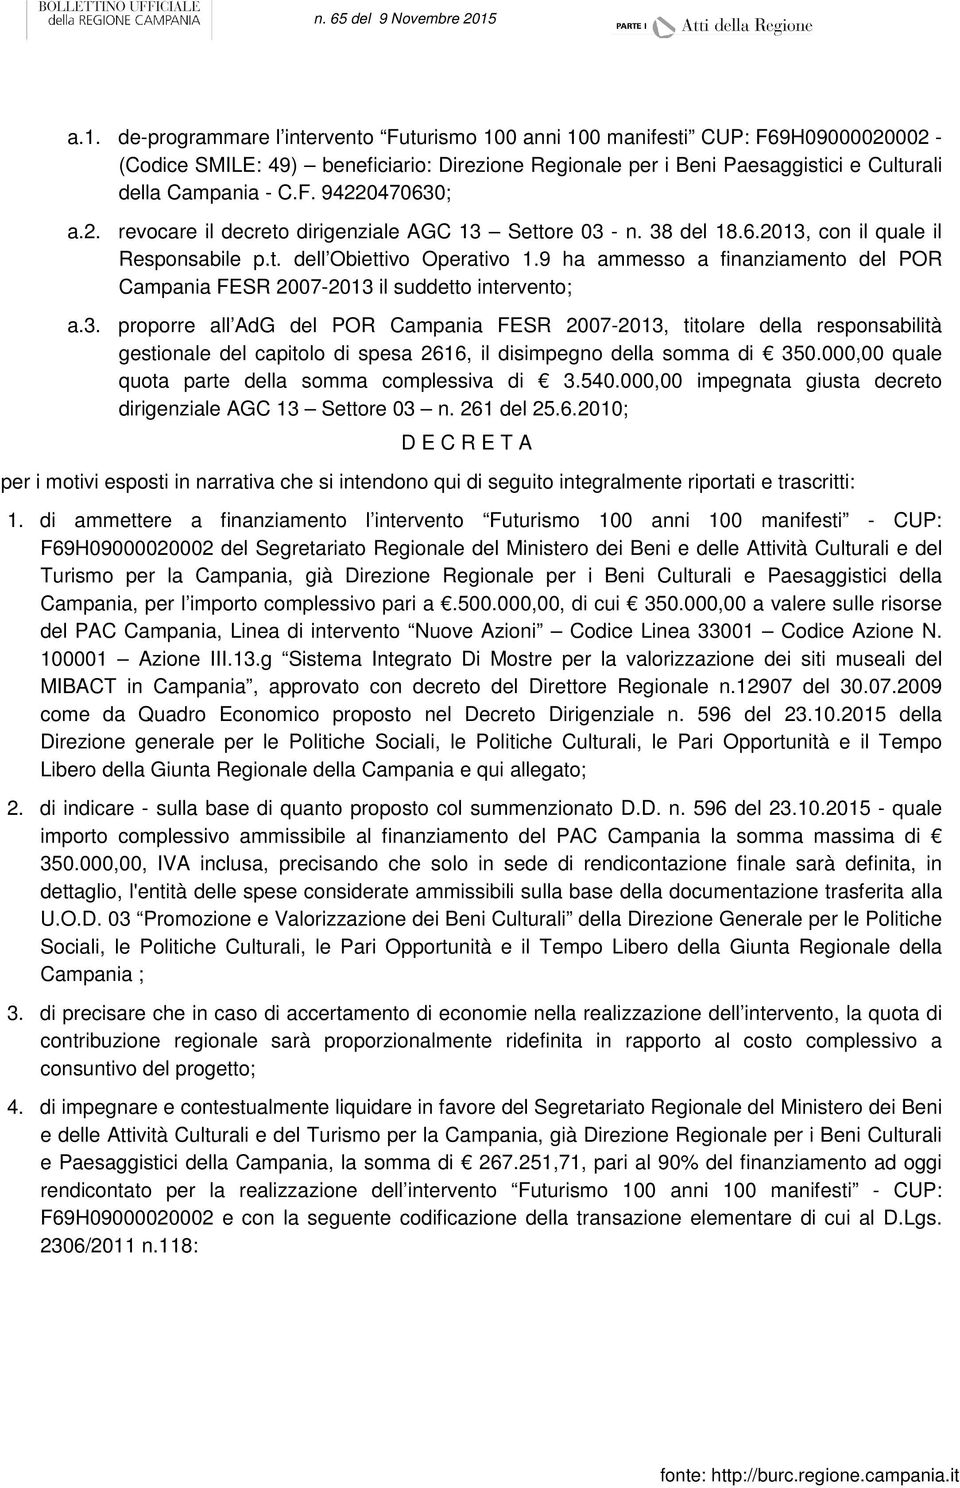 9 ha ammesso a finanziamento del POR Campania FESR 2007-2013 